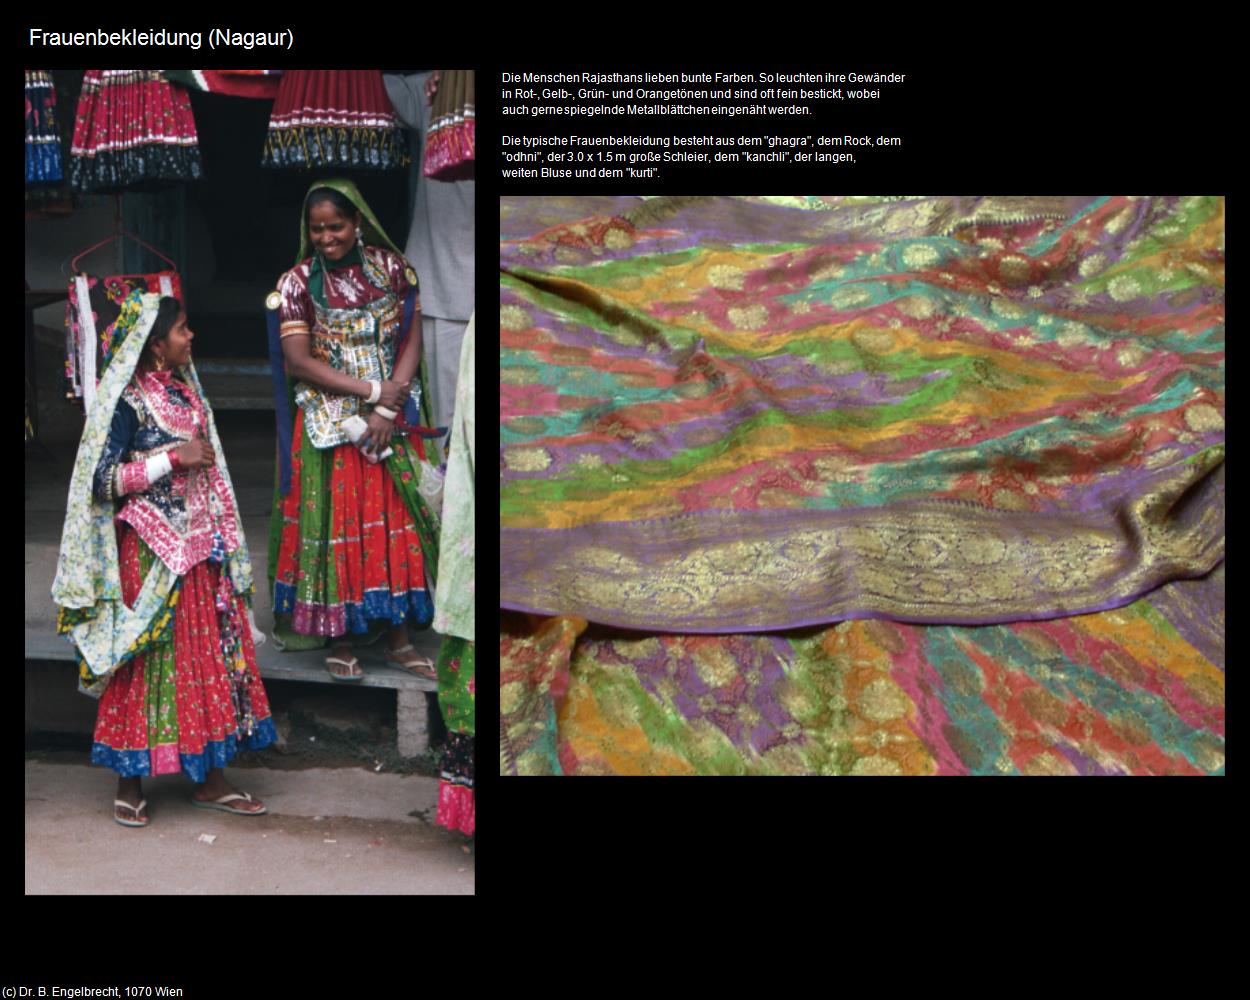 Frauenbekleidung (Nagaur) in Rajasthan - das Land der Könige